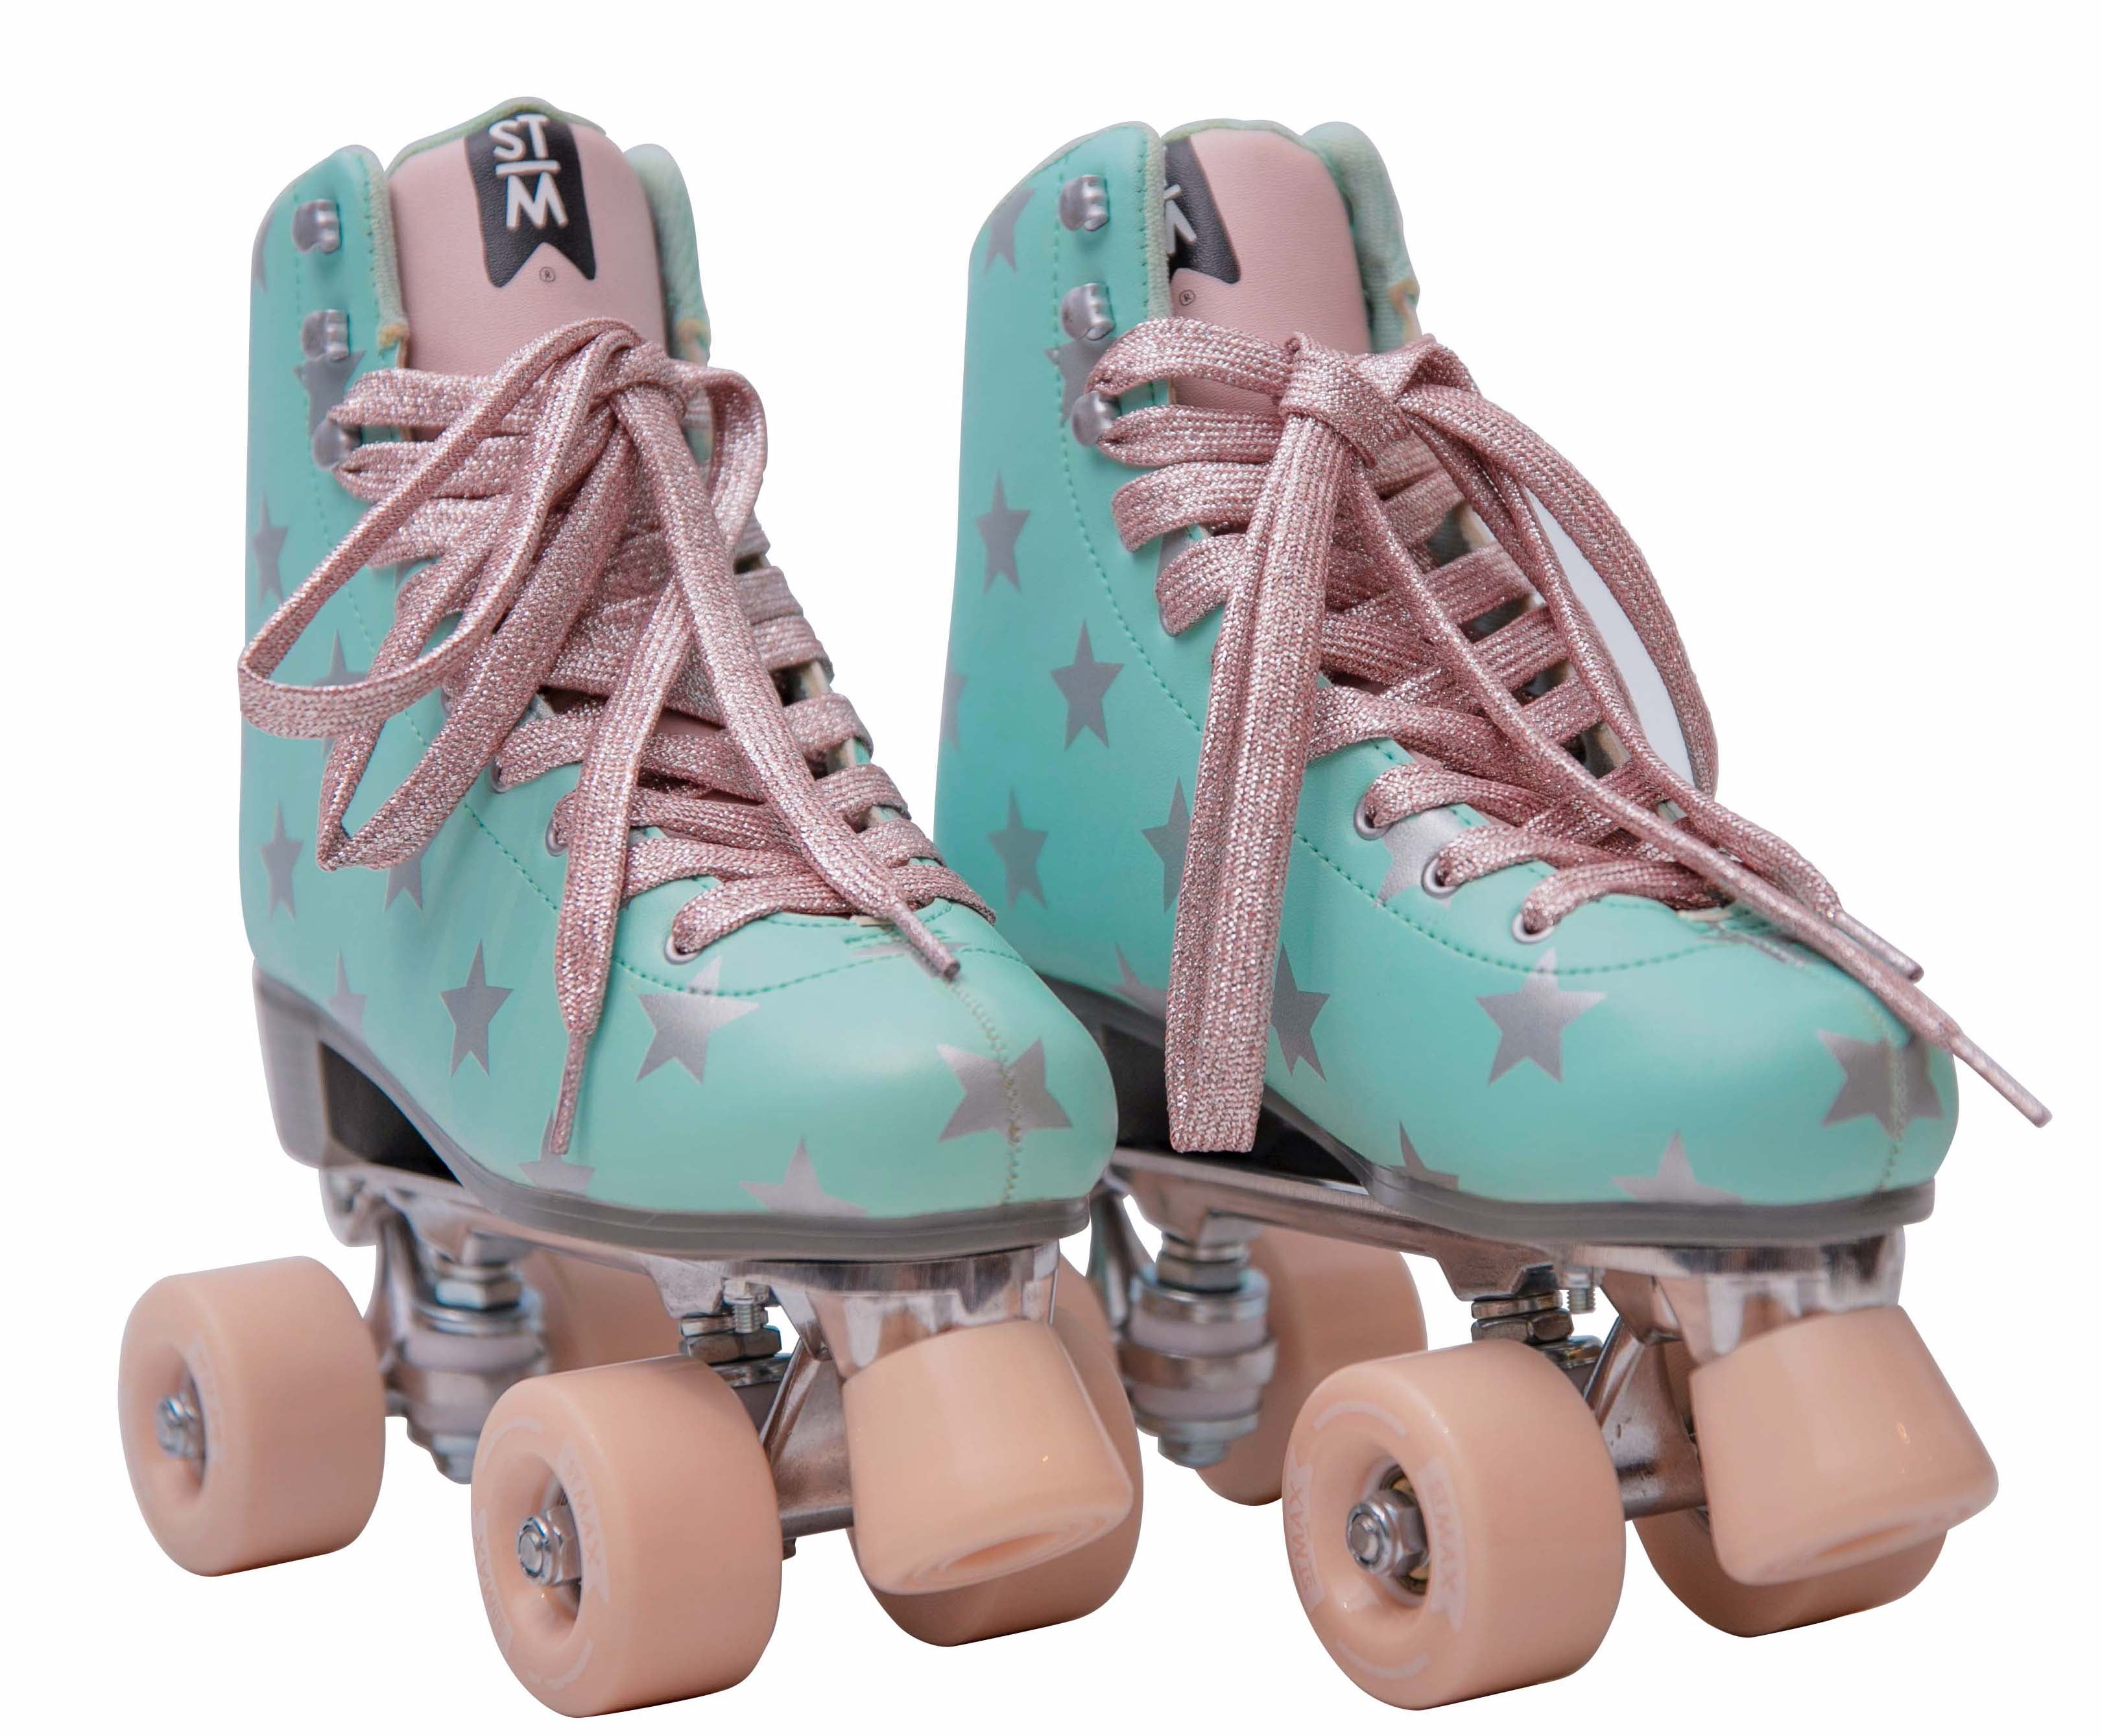 Tempish Pinky Roller Skates Size 5 Women's Size 6 ABEC-7 Bearings 